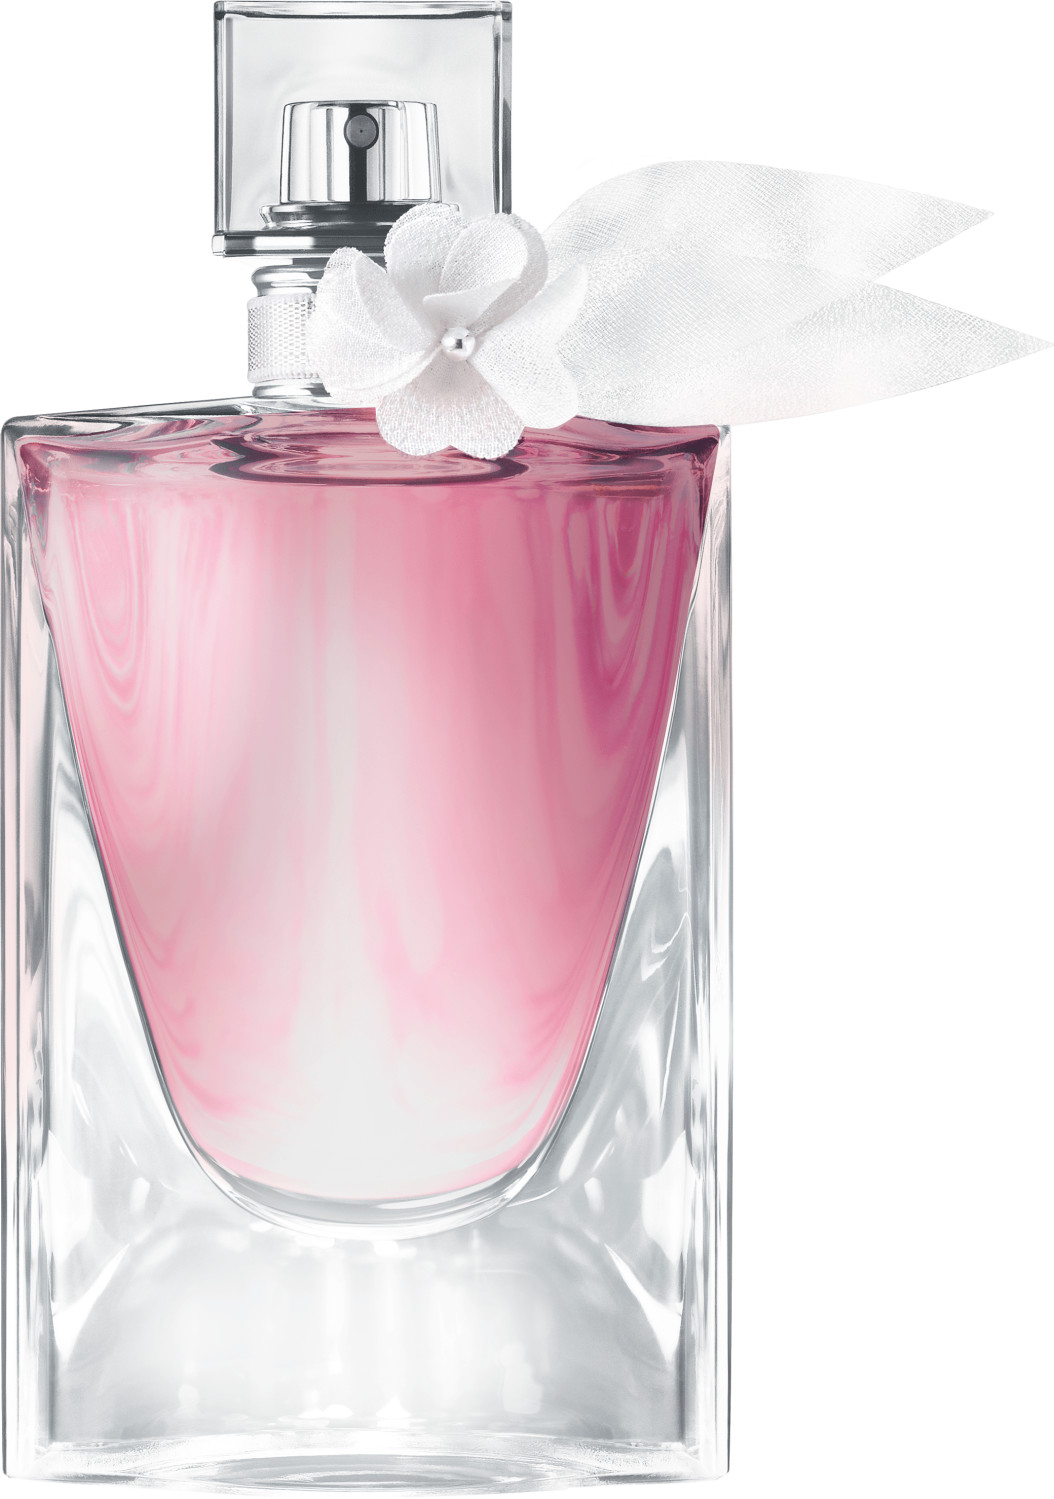 Photos - Women's Fragrance Lancome Lancôme La Vie Est Belle L'Eau de Toilette Florale  (50ml)